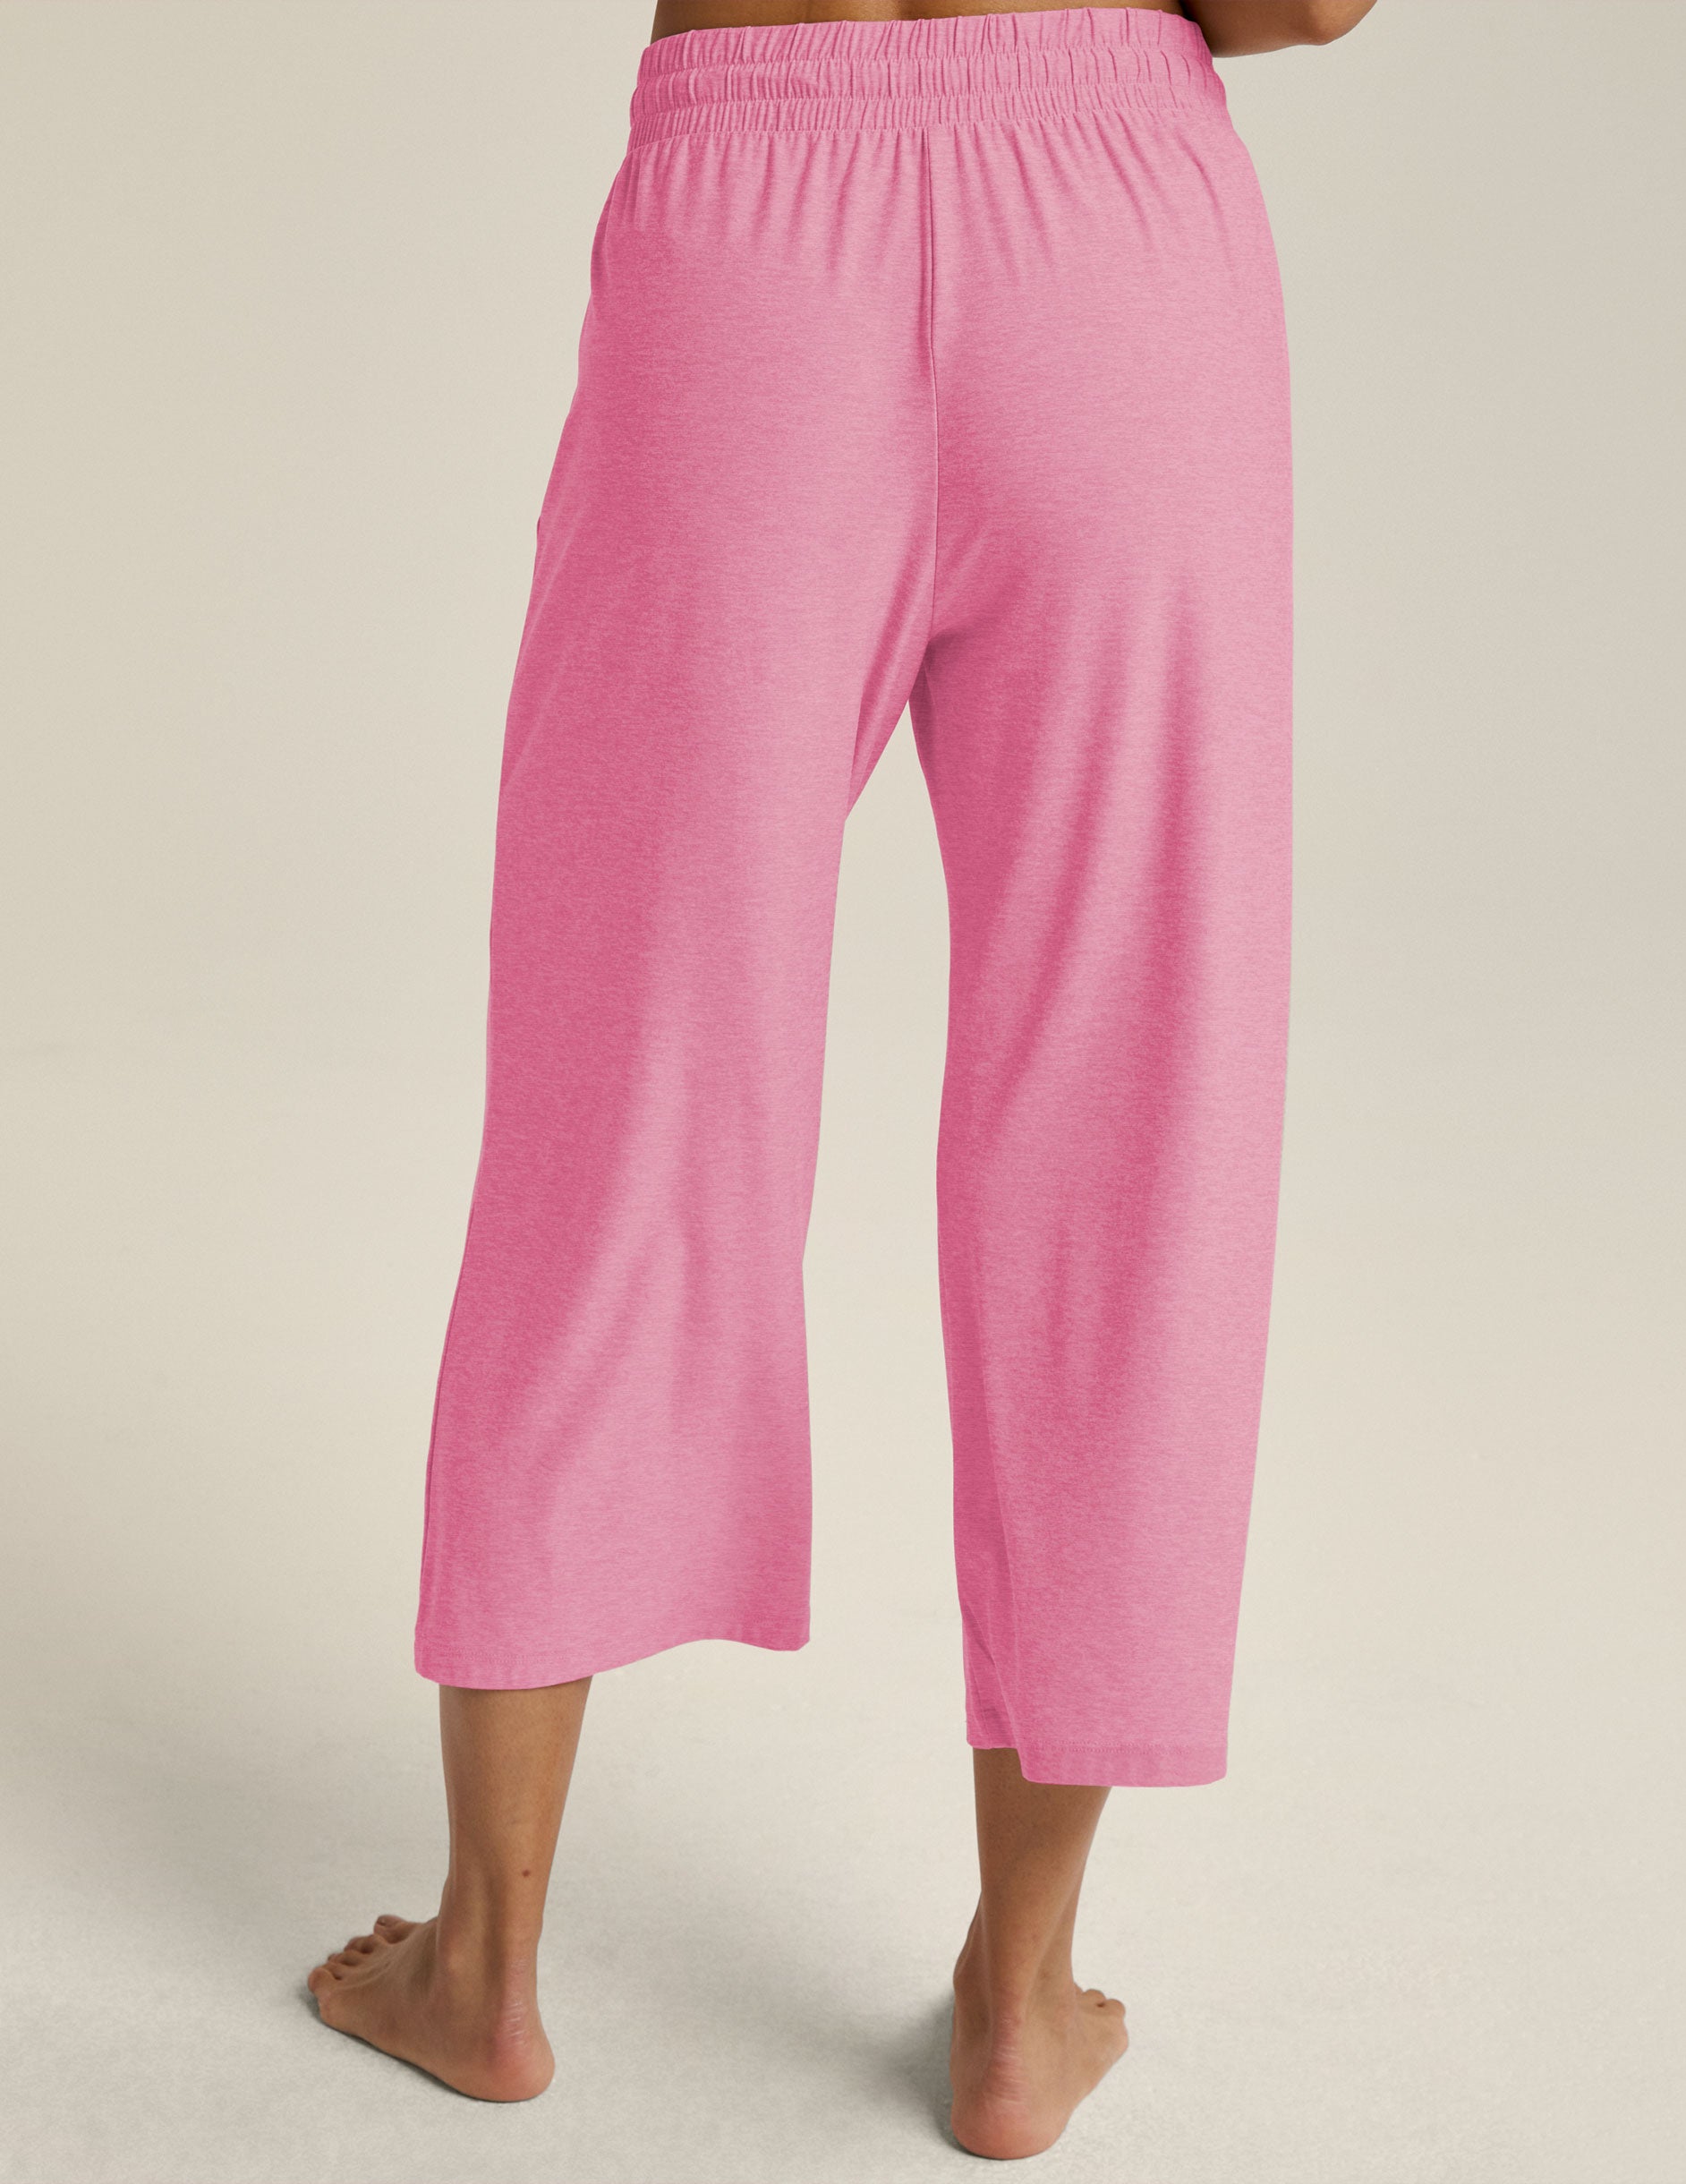 pink capri sleep pants with a ribbon drawstring at waist. 